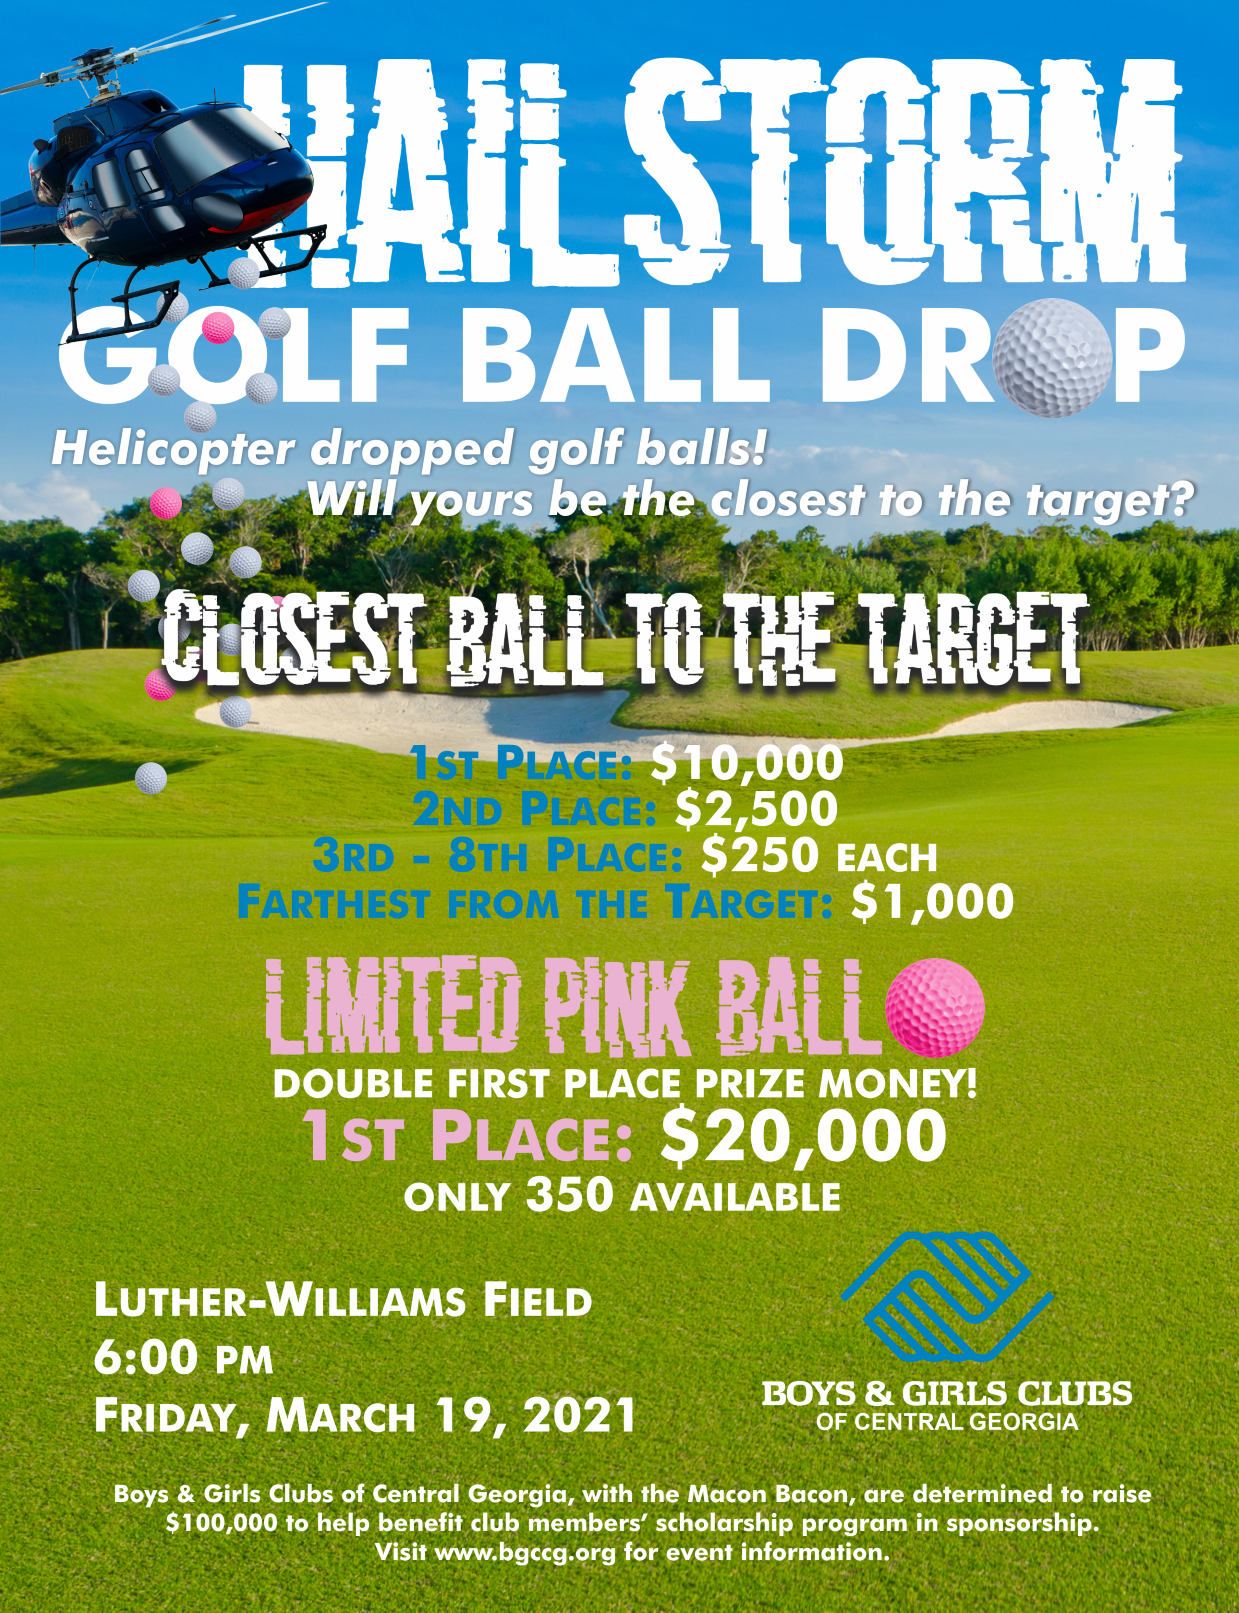 CDT Hailstorm Golf Ball Drop